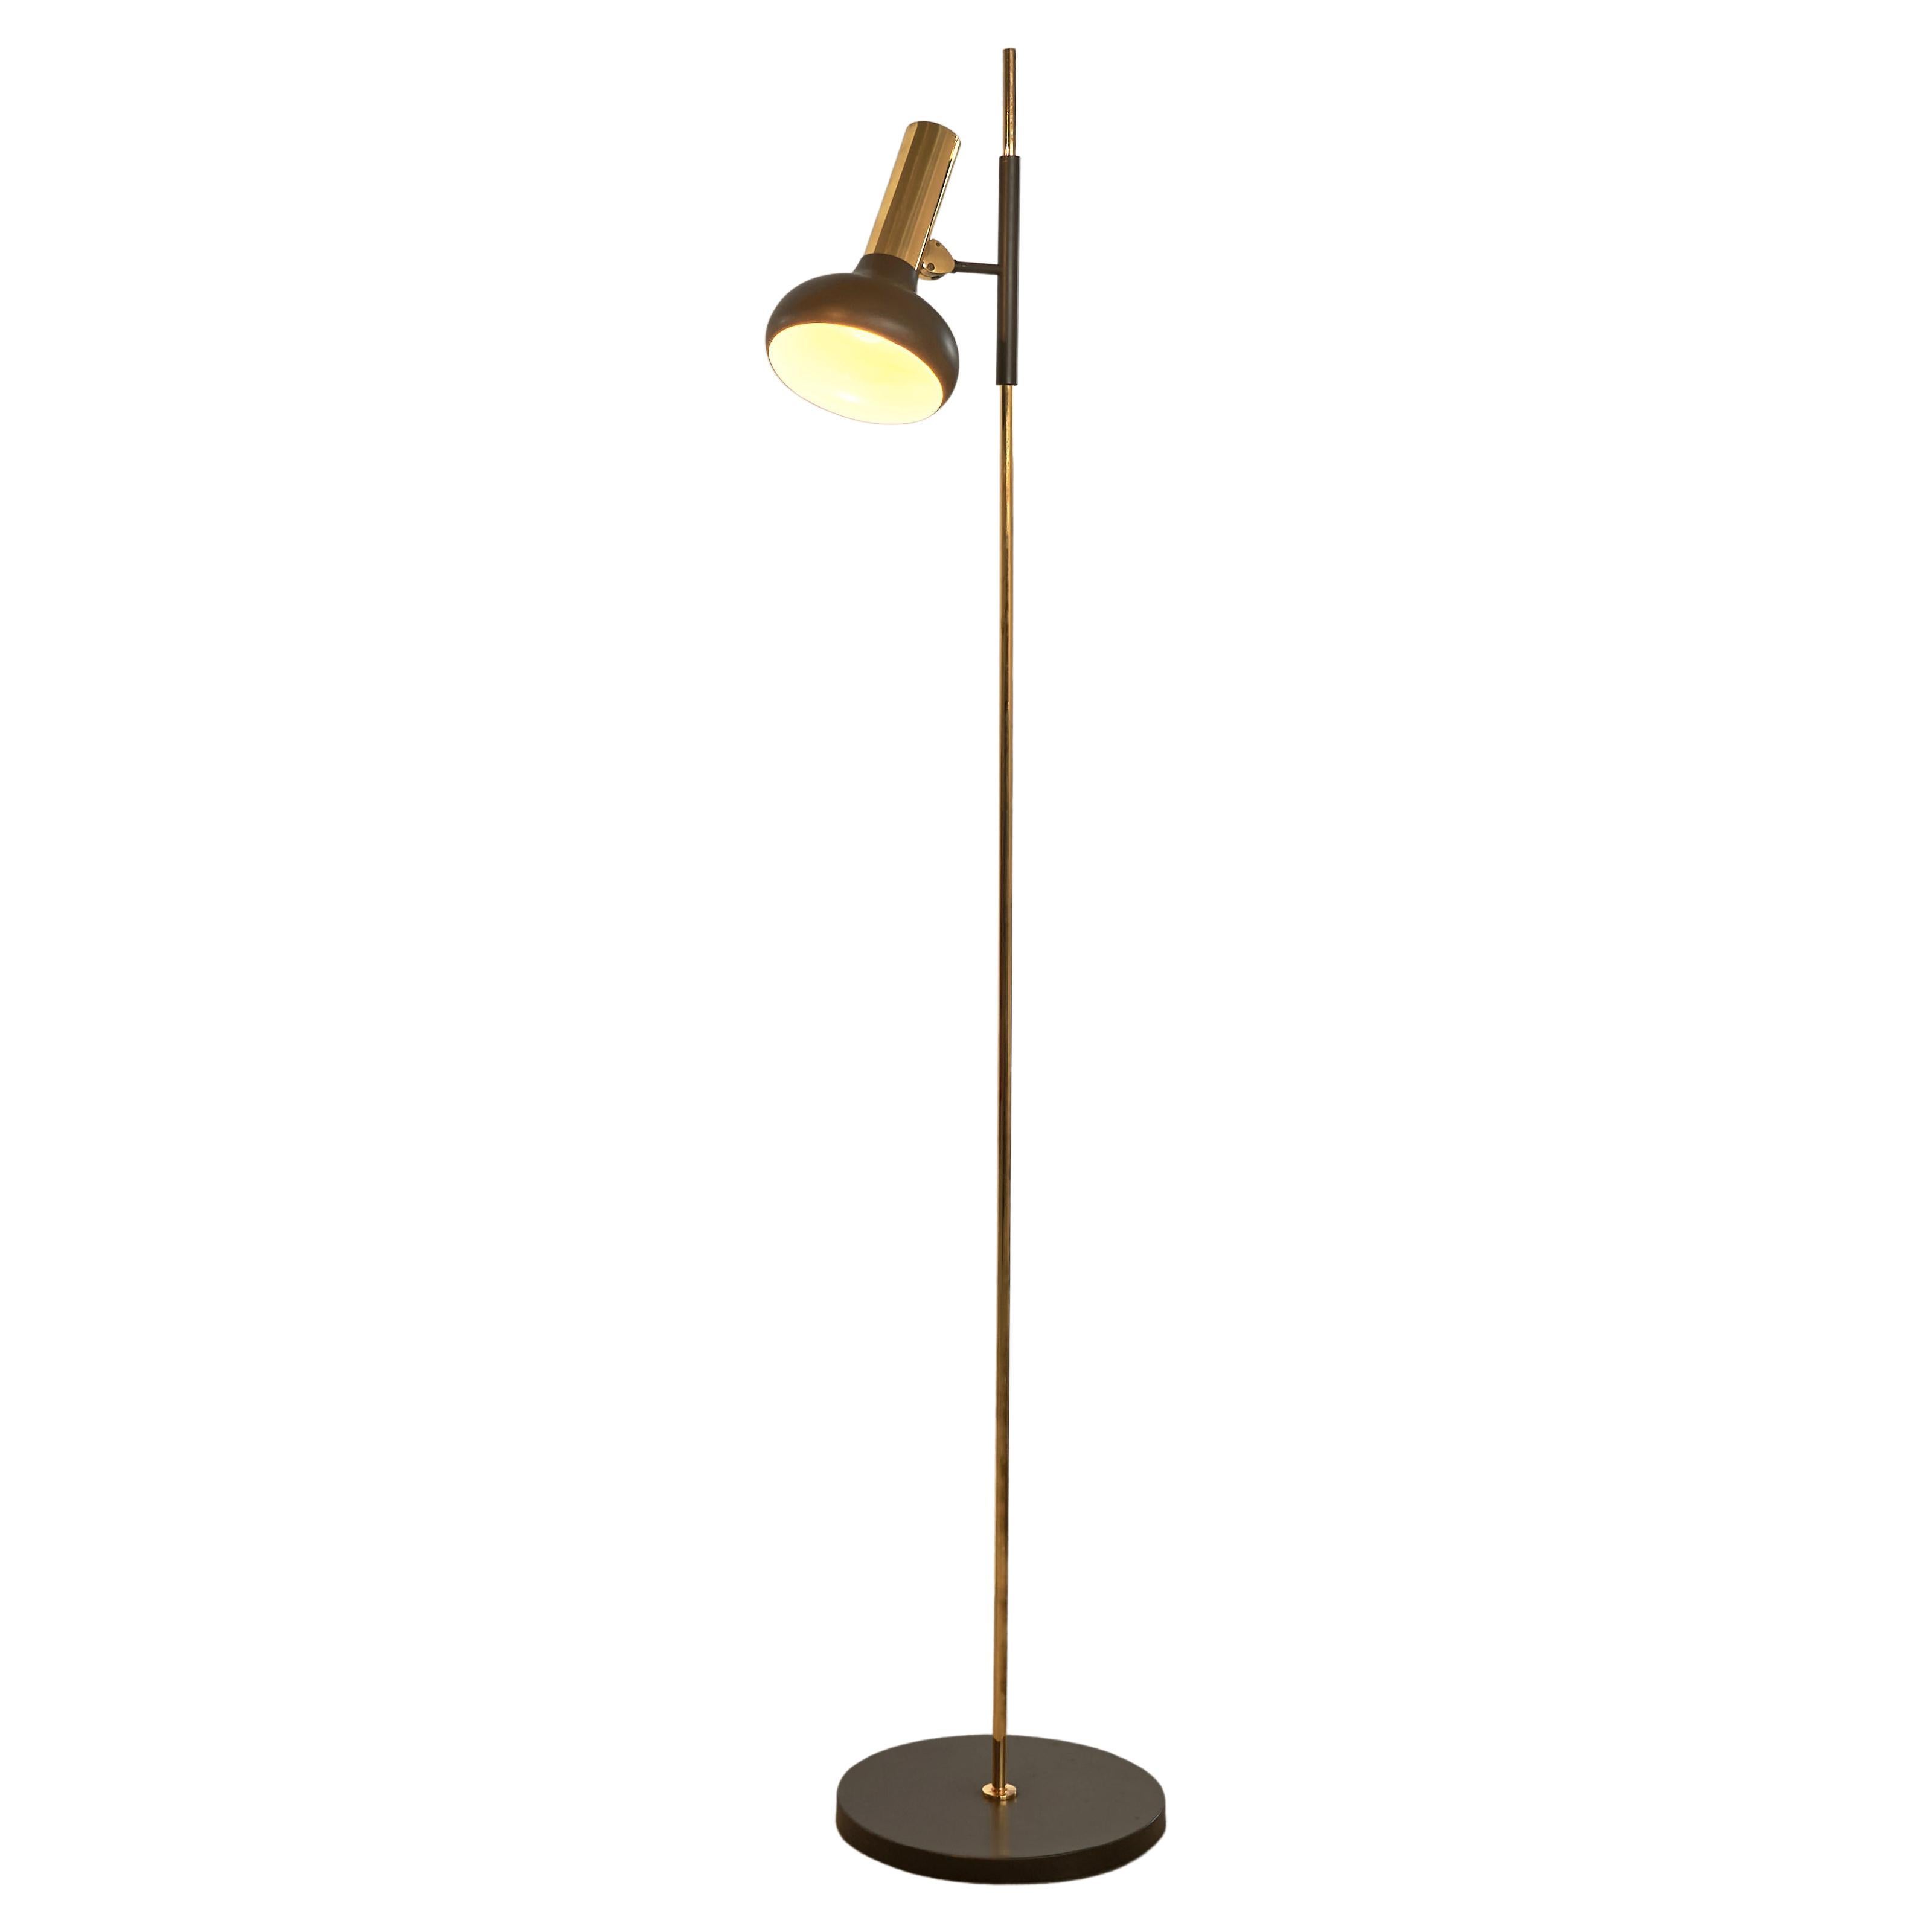 S.A. Boulanger Floor Lamp in Brass